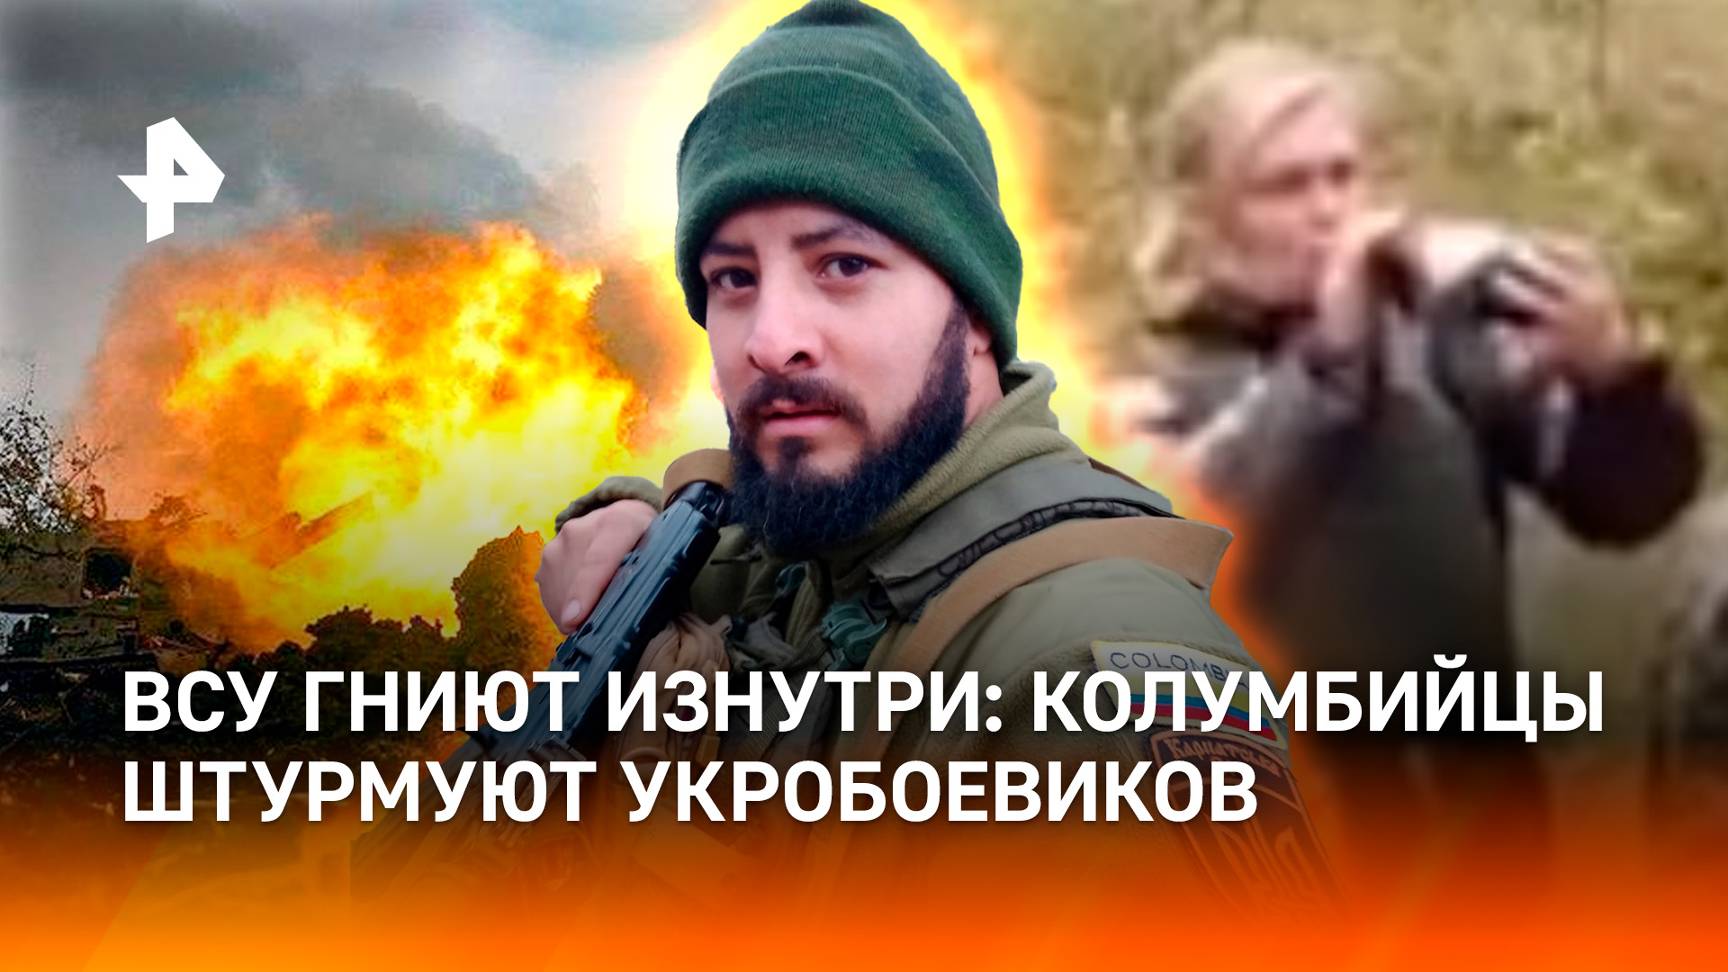 ВСУ разлагаются изнутри: наемники штурмуют украинцев, техника взрывается / Хитрая ловушка для БПЛА